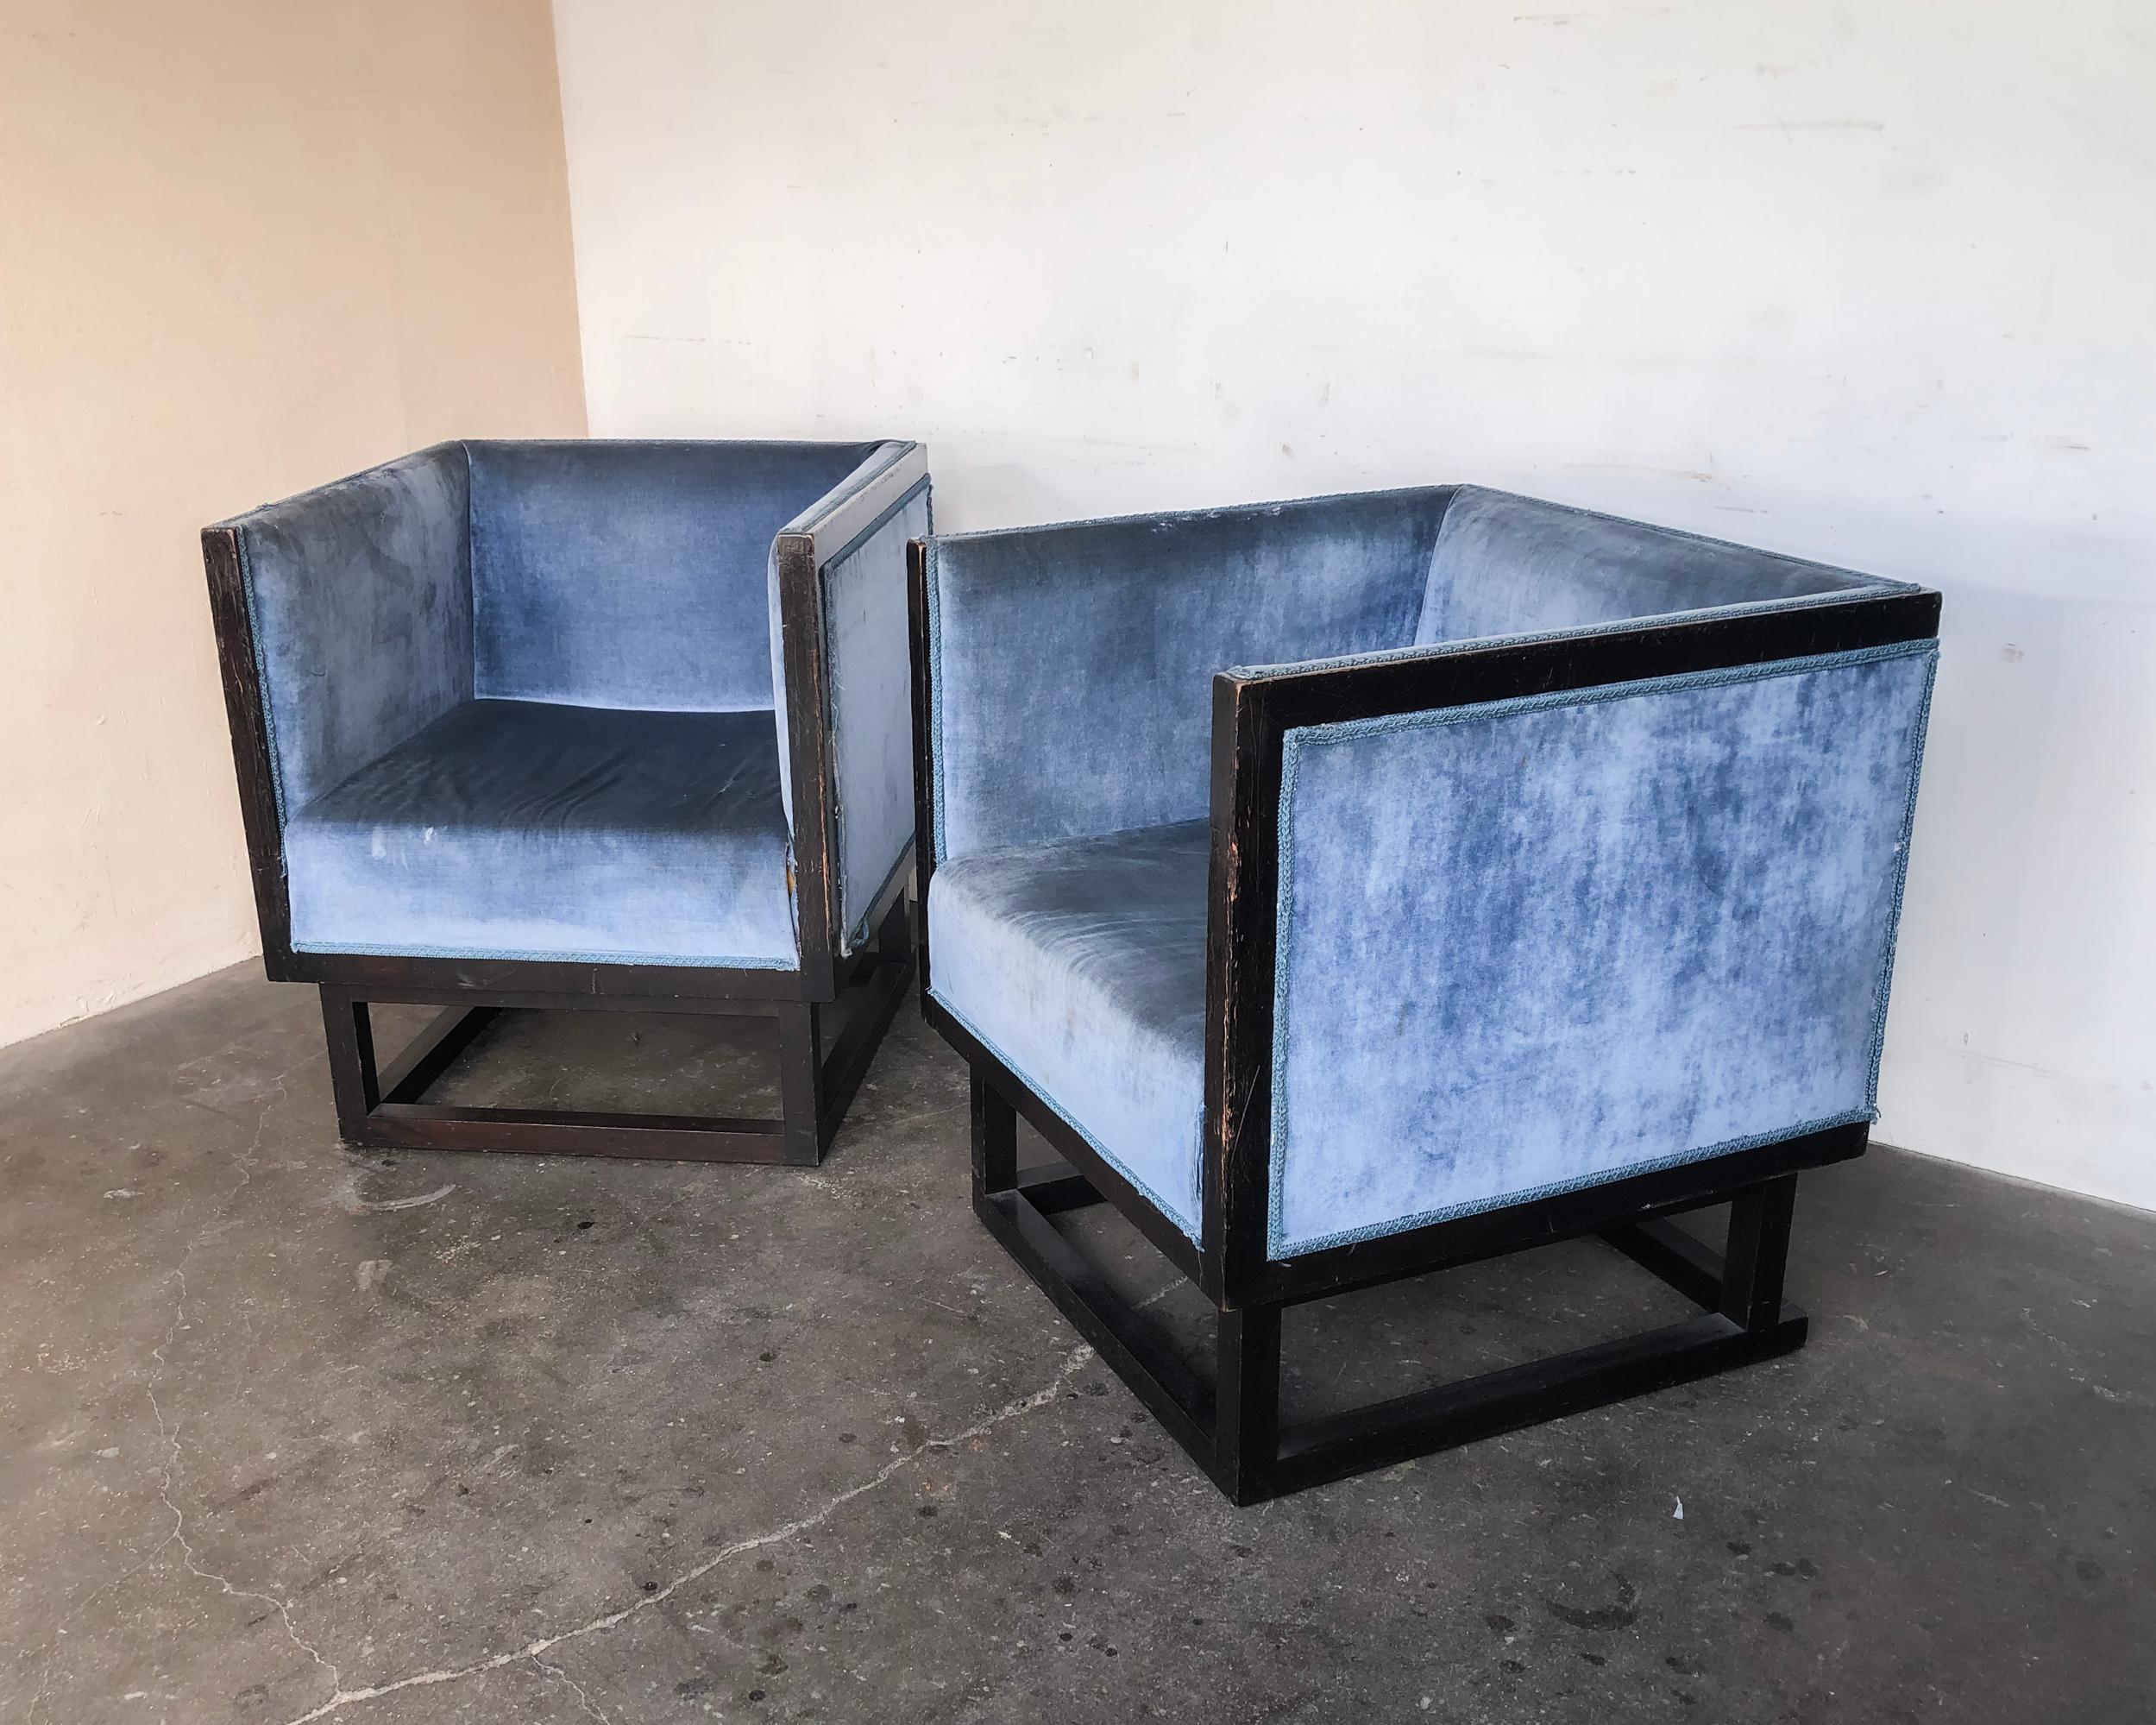 Paar seltene originale 'Cabinet Chairs' von Josef Hoffmann, handgefertigt um 1980 von Wittmann Austria. Die 1903 für das Wiener Haus von Dr. Salzer entworfenen Kabinettstühle von Josef Hoffmann sind ein zeitloses Design. Die rationalistische